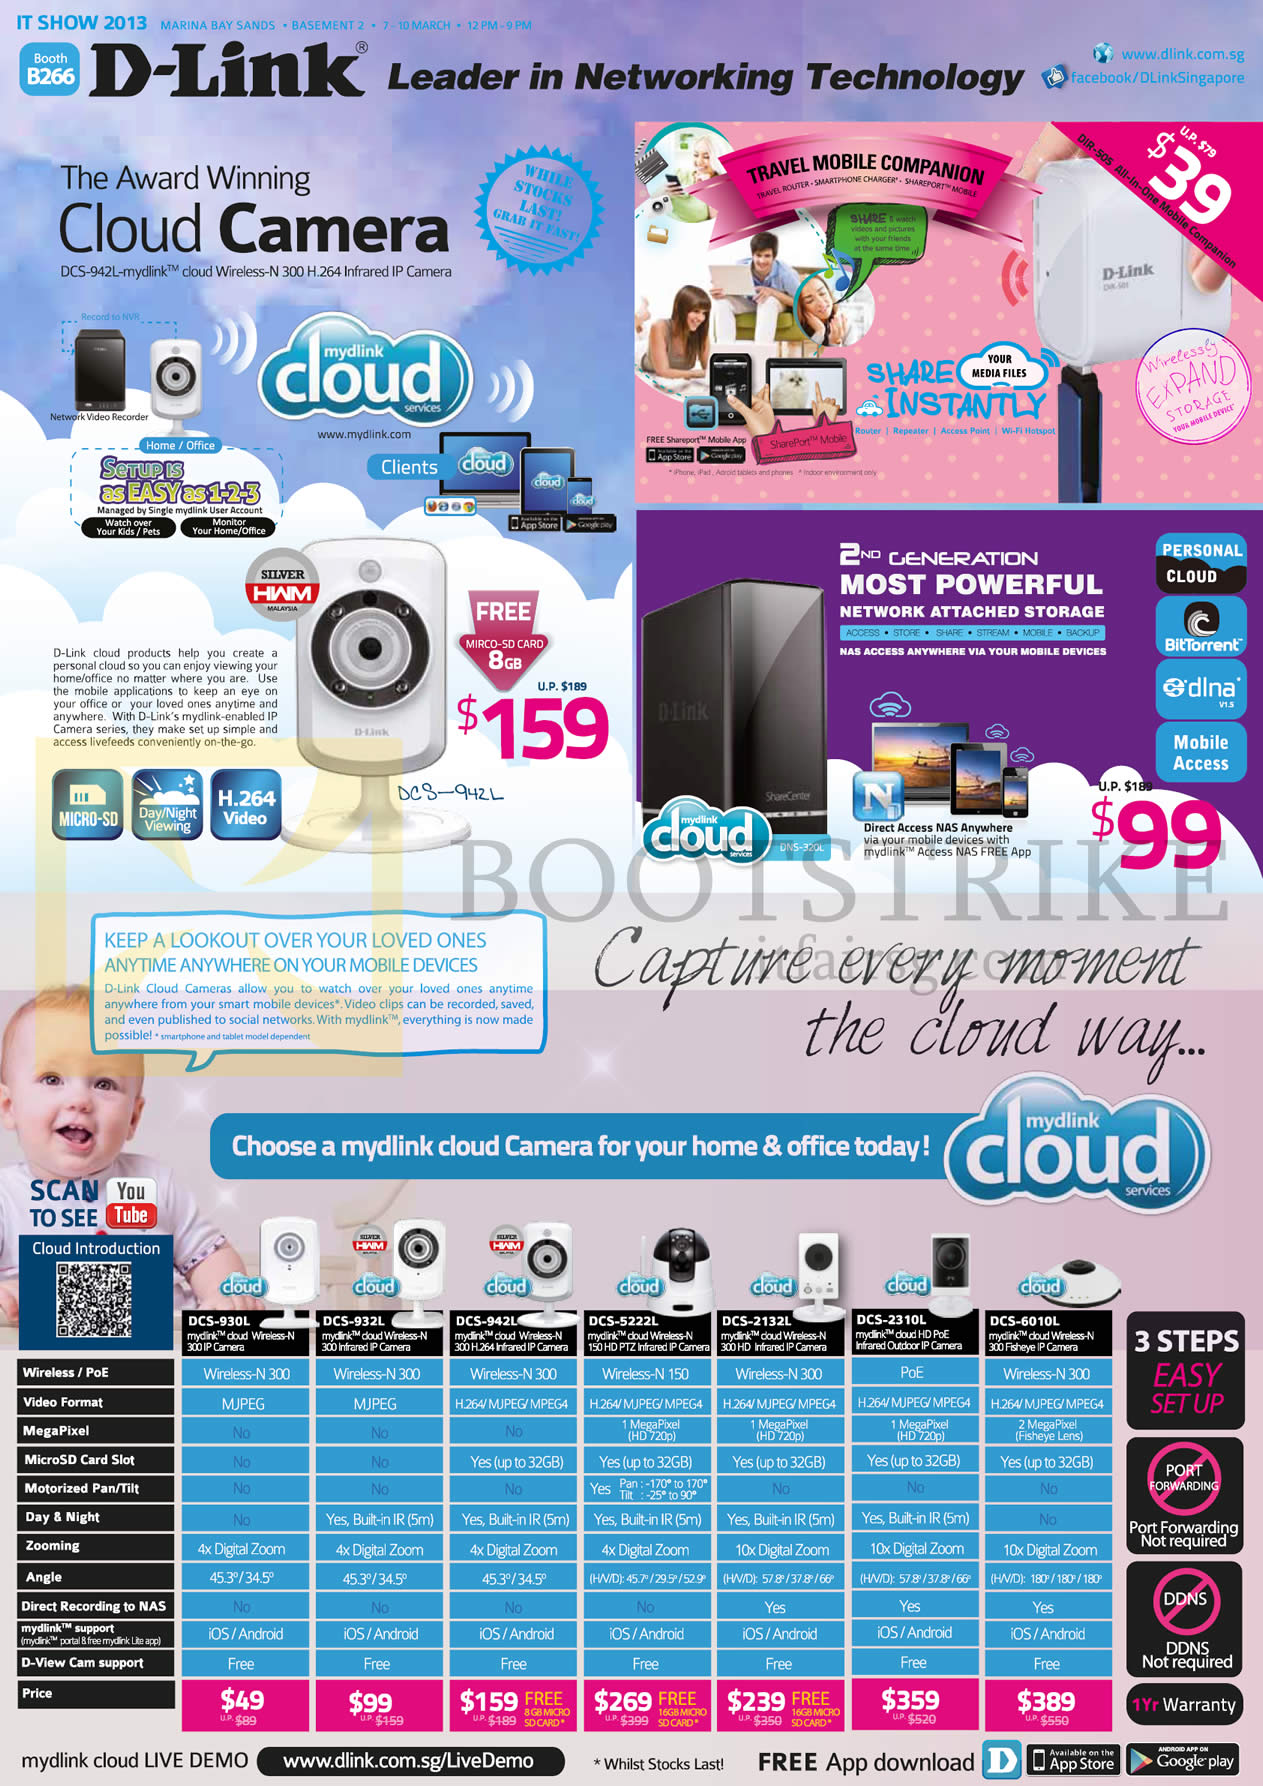 IT SHOW 2013 price list image brochure of D-Link IPCam Cloud Camera DCS 930L, 932L, 942L, 5222L, 2132L, 2310L, 6010L